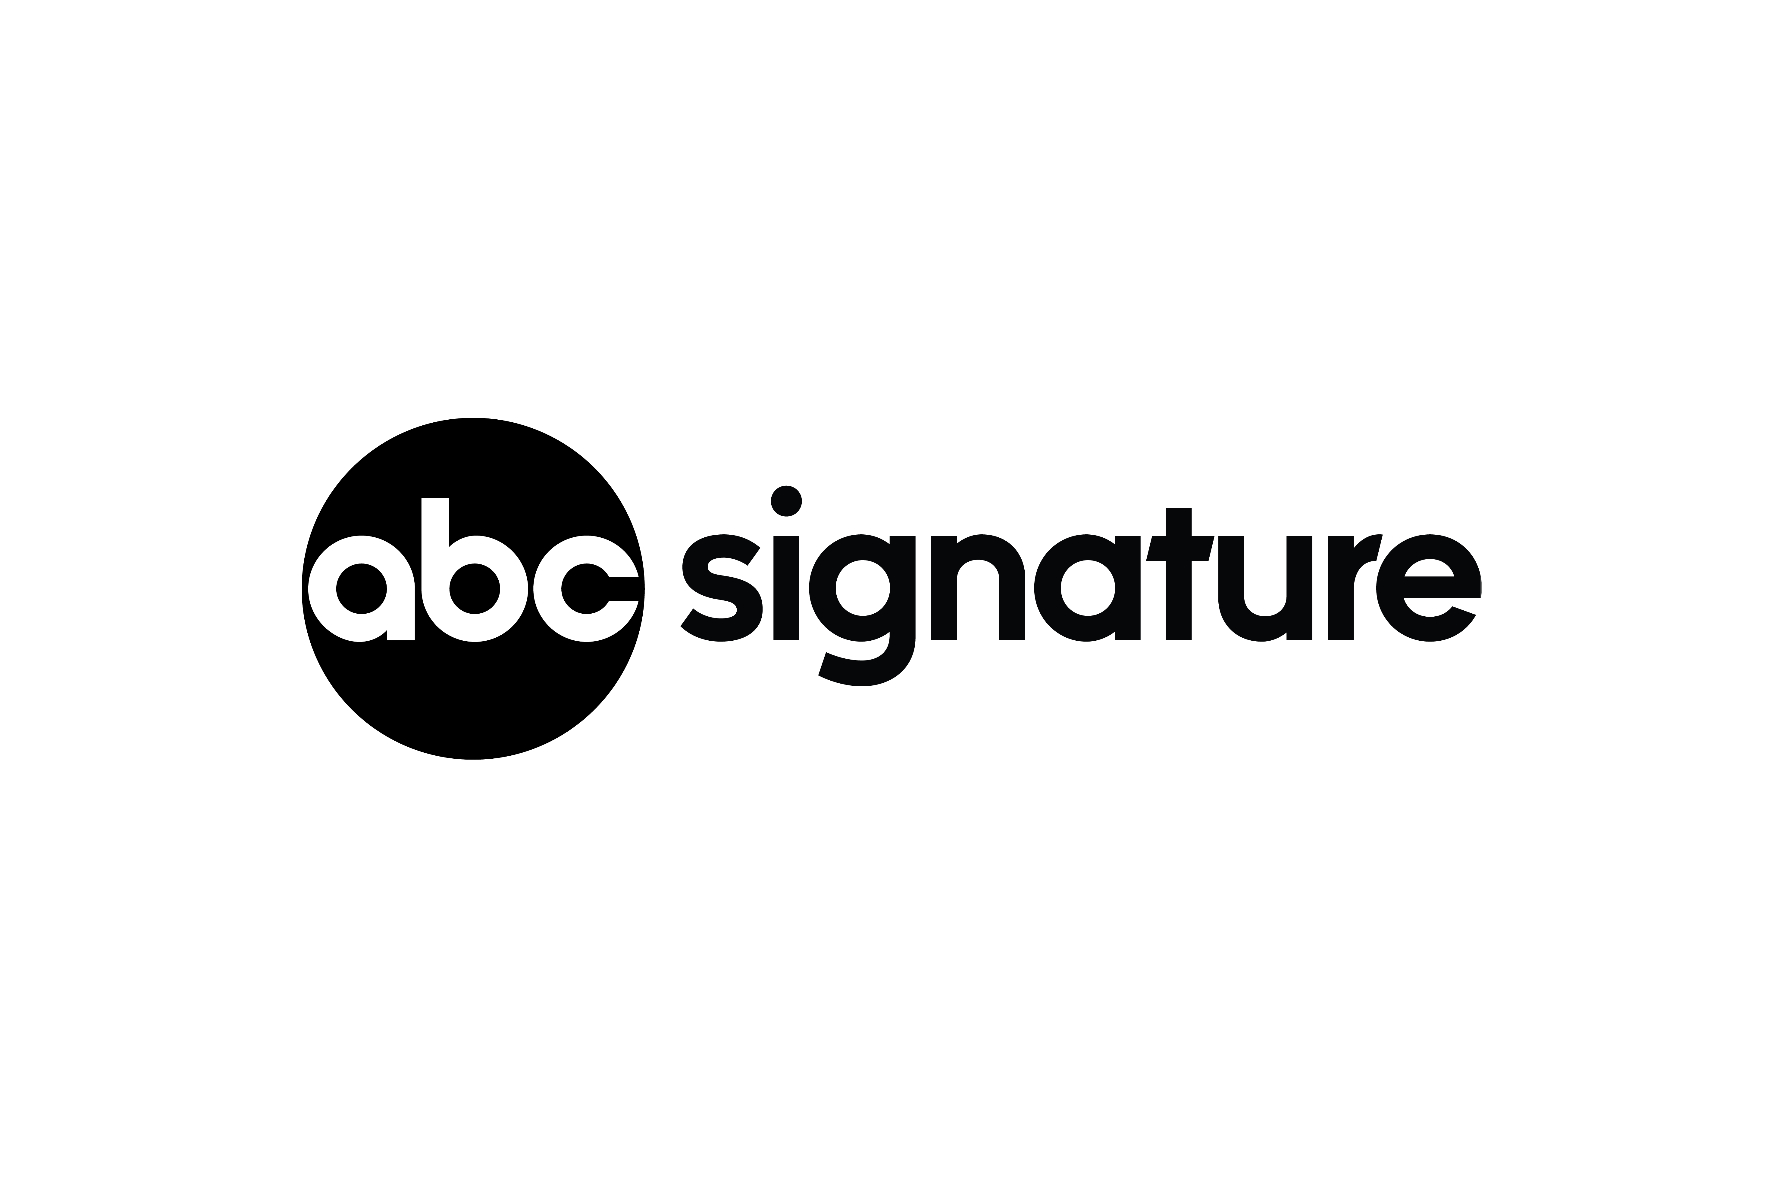 OIC_ABC_Signature_logo